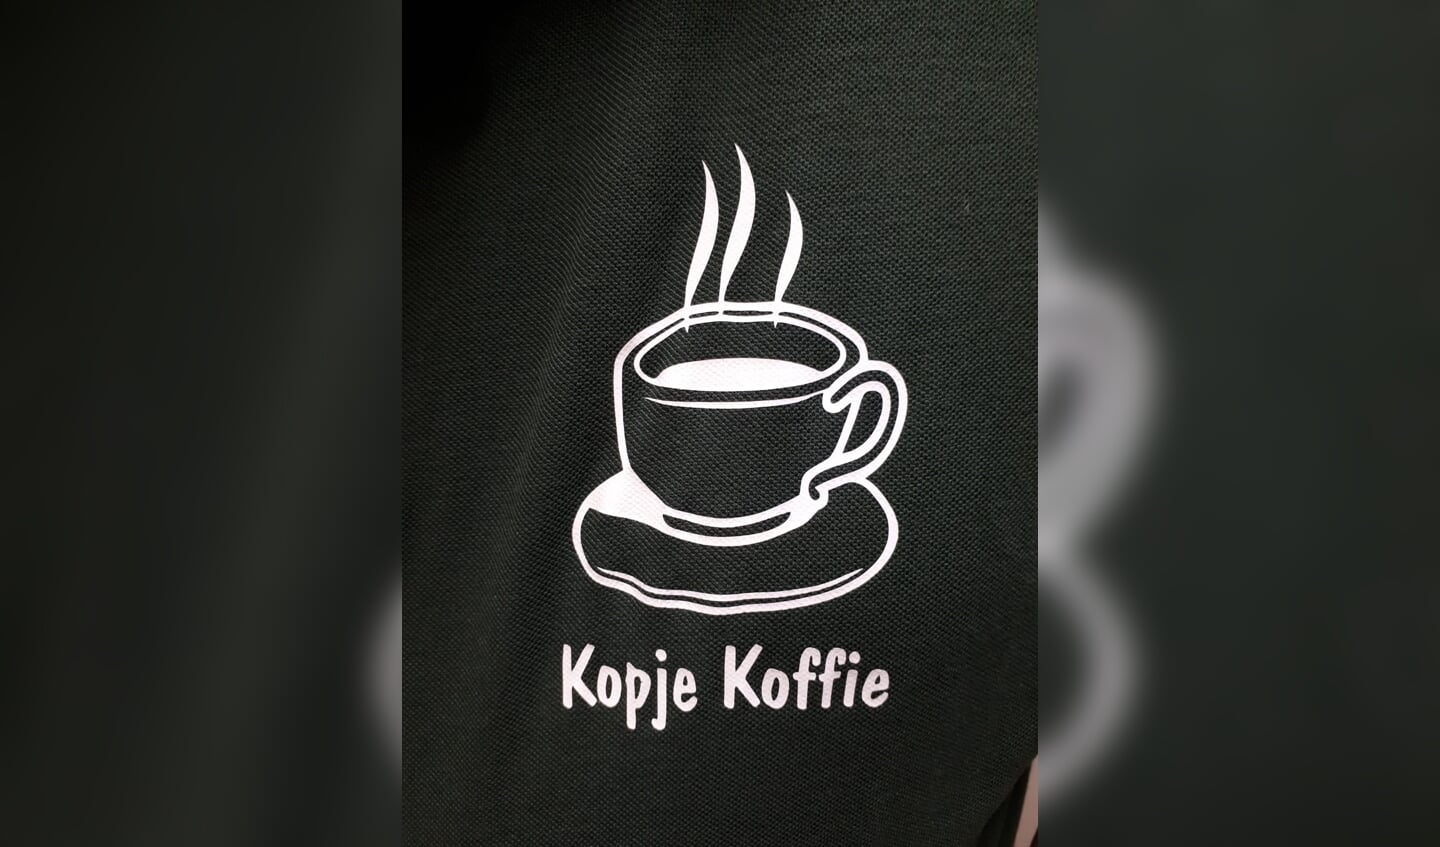 Het logo 'kopje koffie' is mogelijk gemaakt door Chris Bergmans